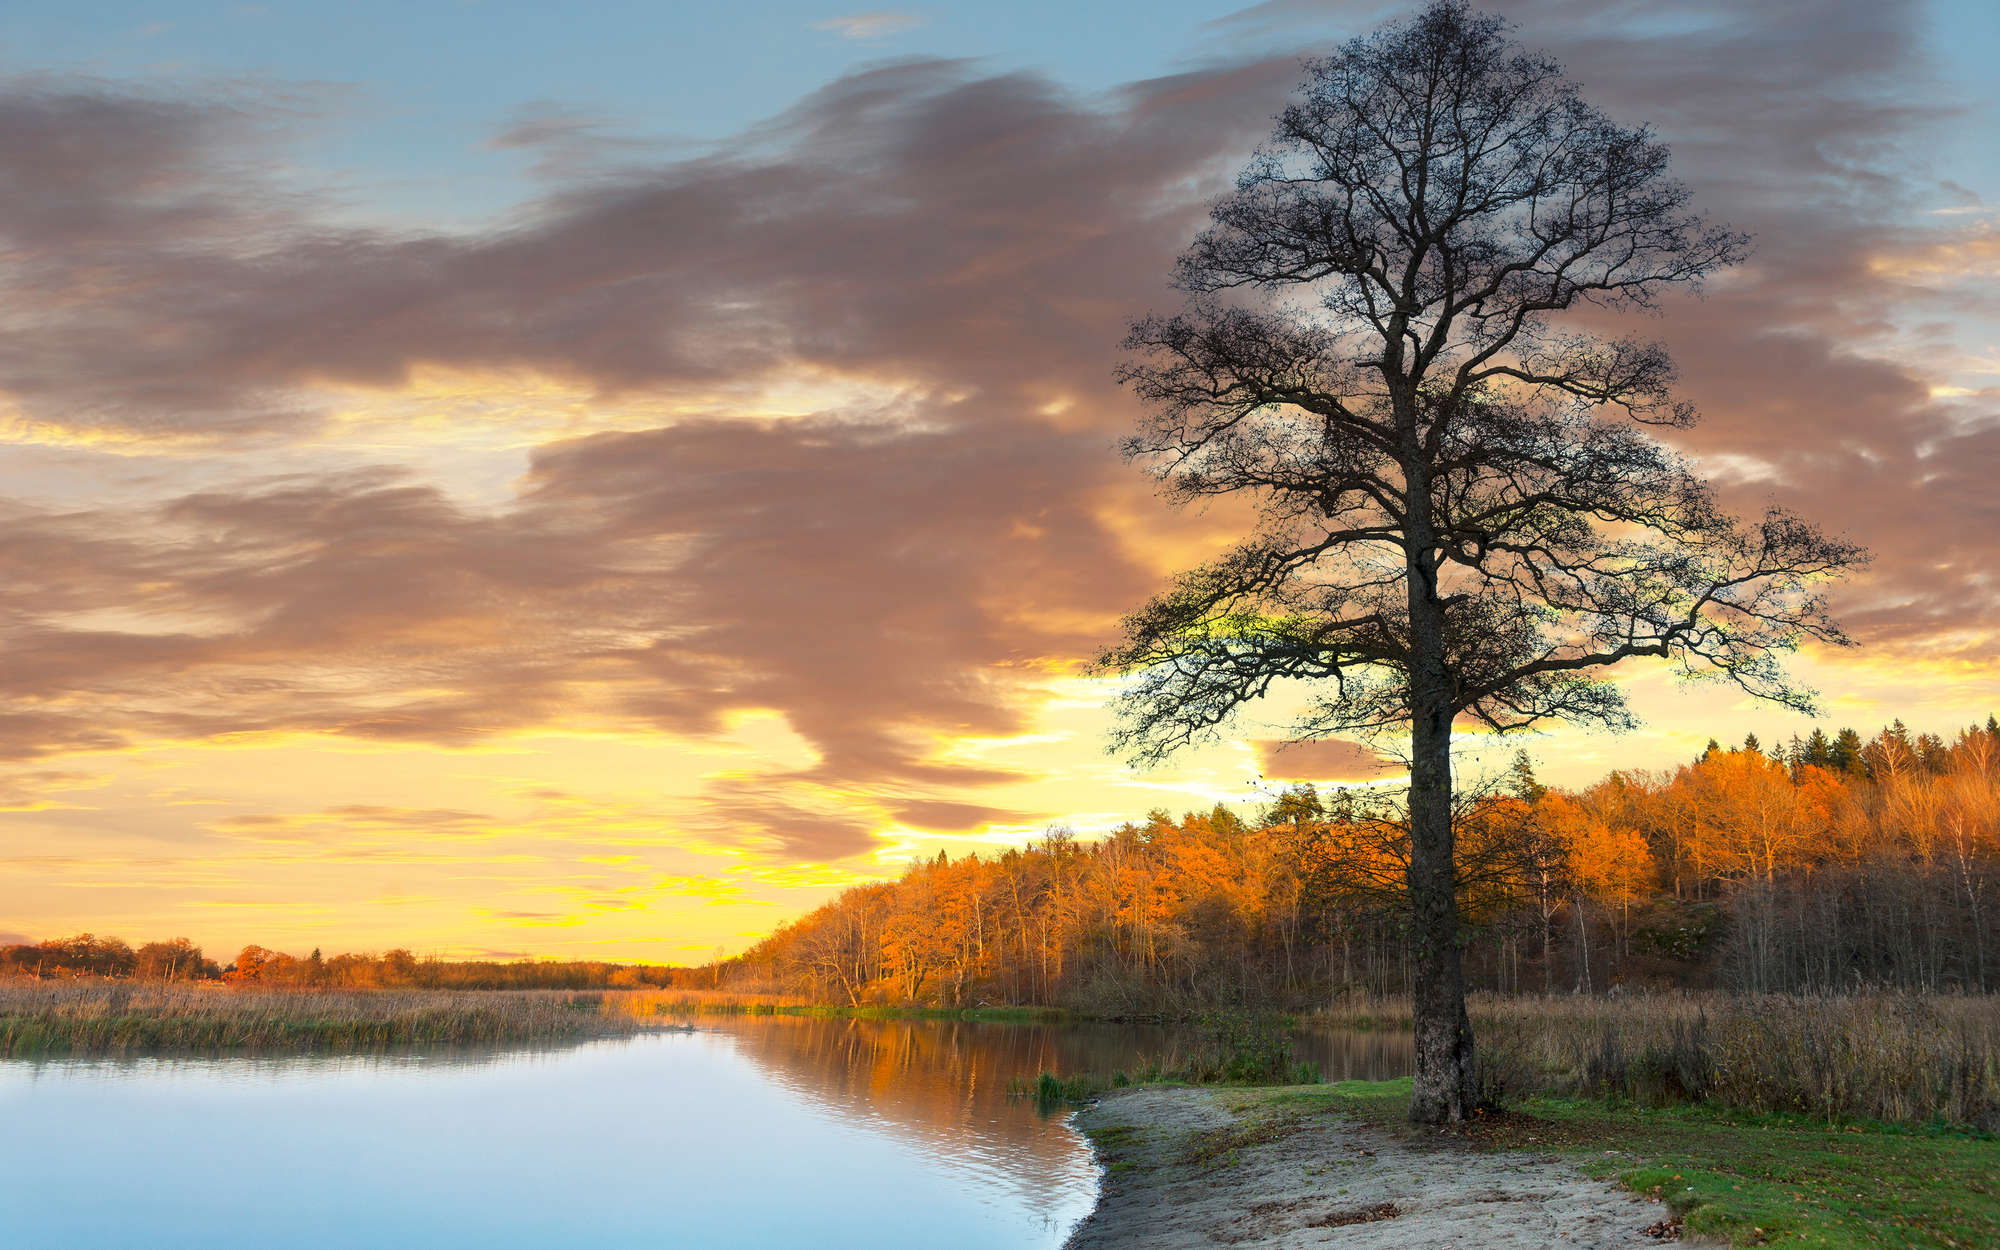             Fotomural Bosque y árbol a orillas del lago - tejido no tejido liso de alta calidad
        